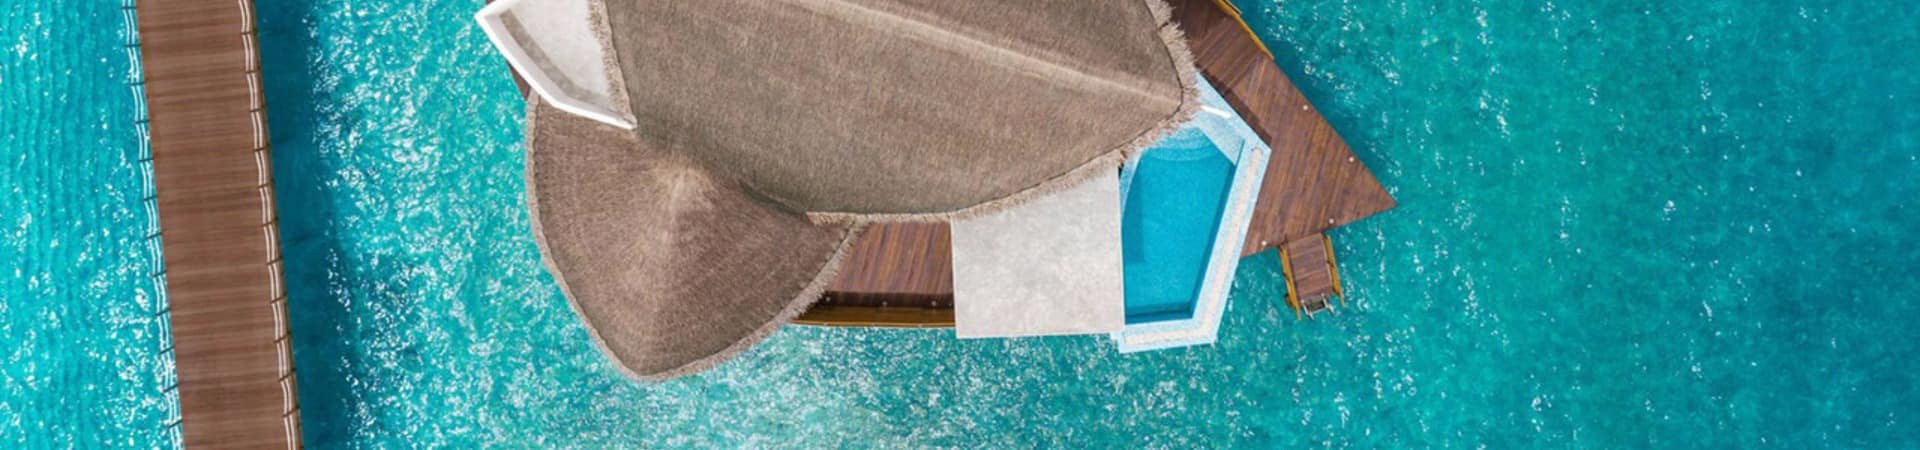 Jw marriott maldives overwater pool villa sunrise